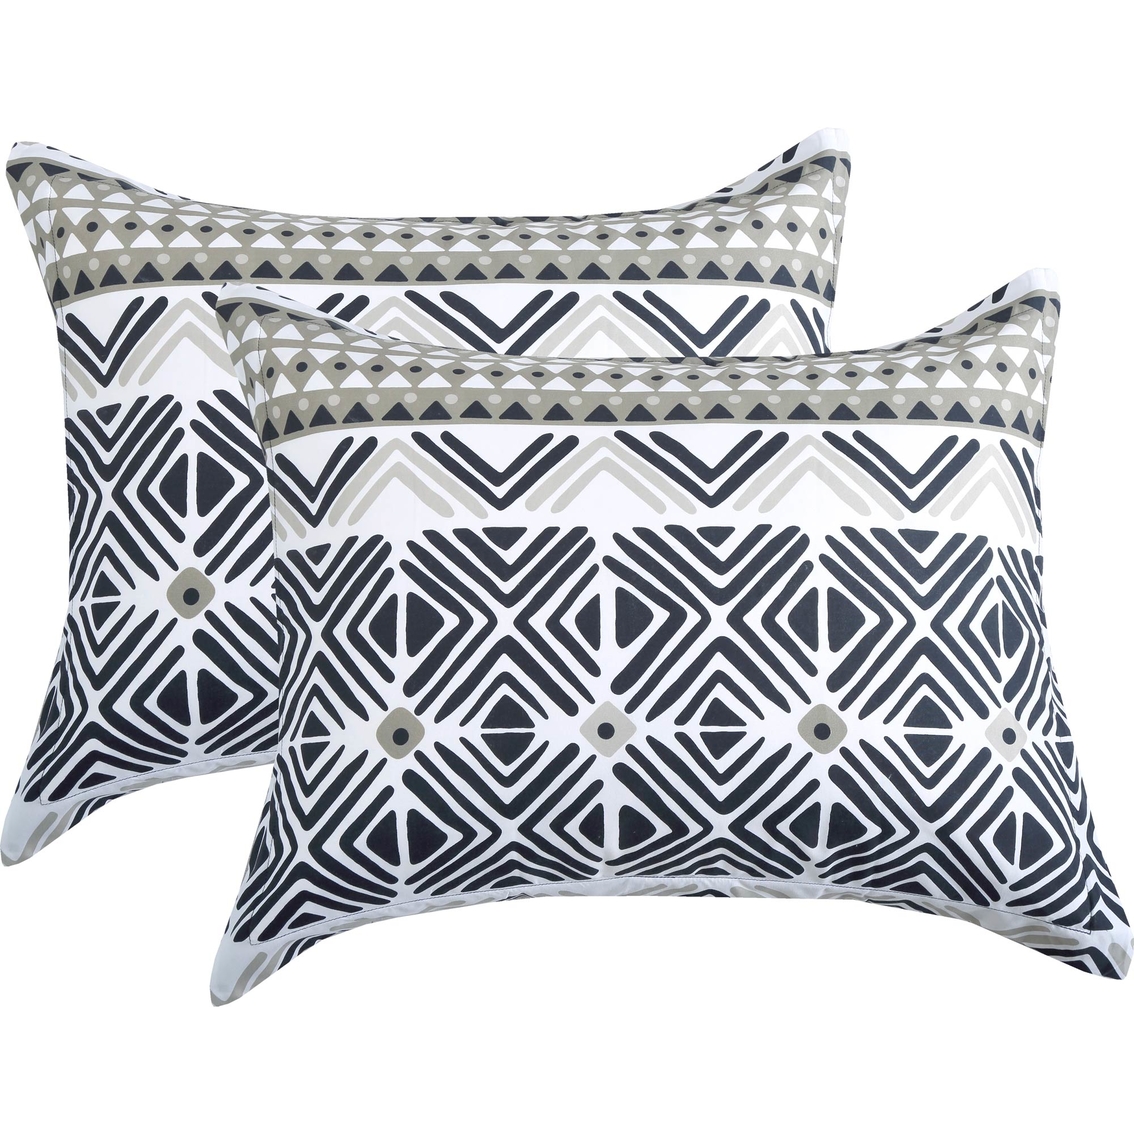 Royale Linens Kenya 7 Piece Comforter Set - Image 2 of 4